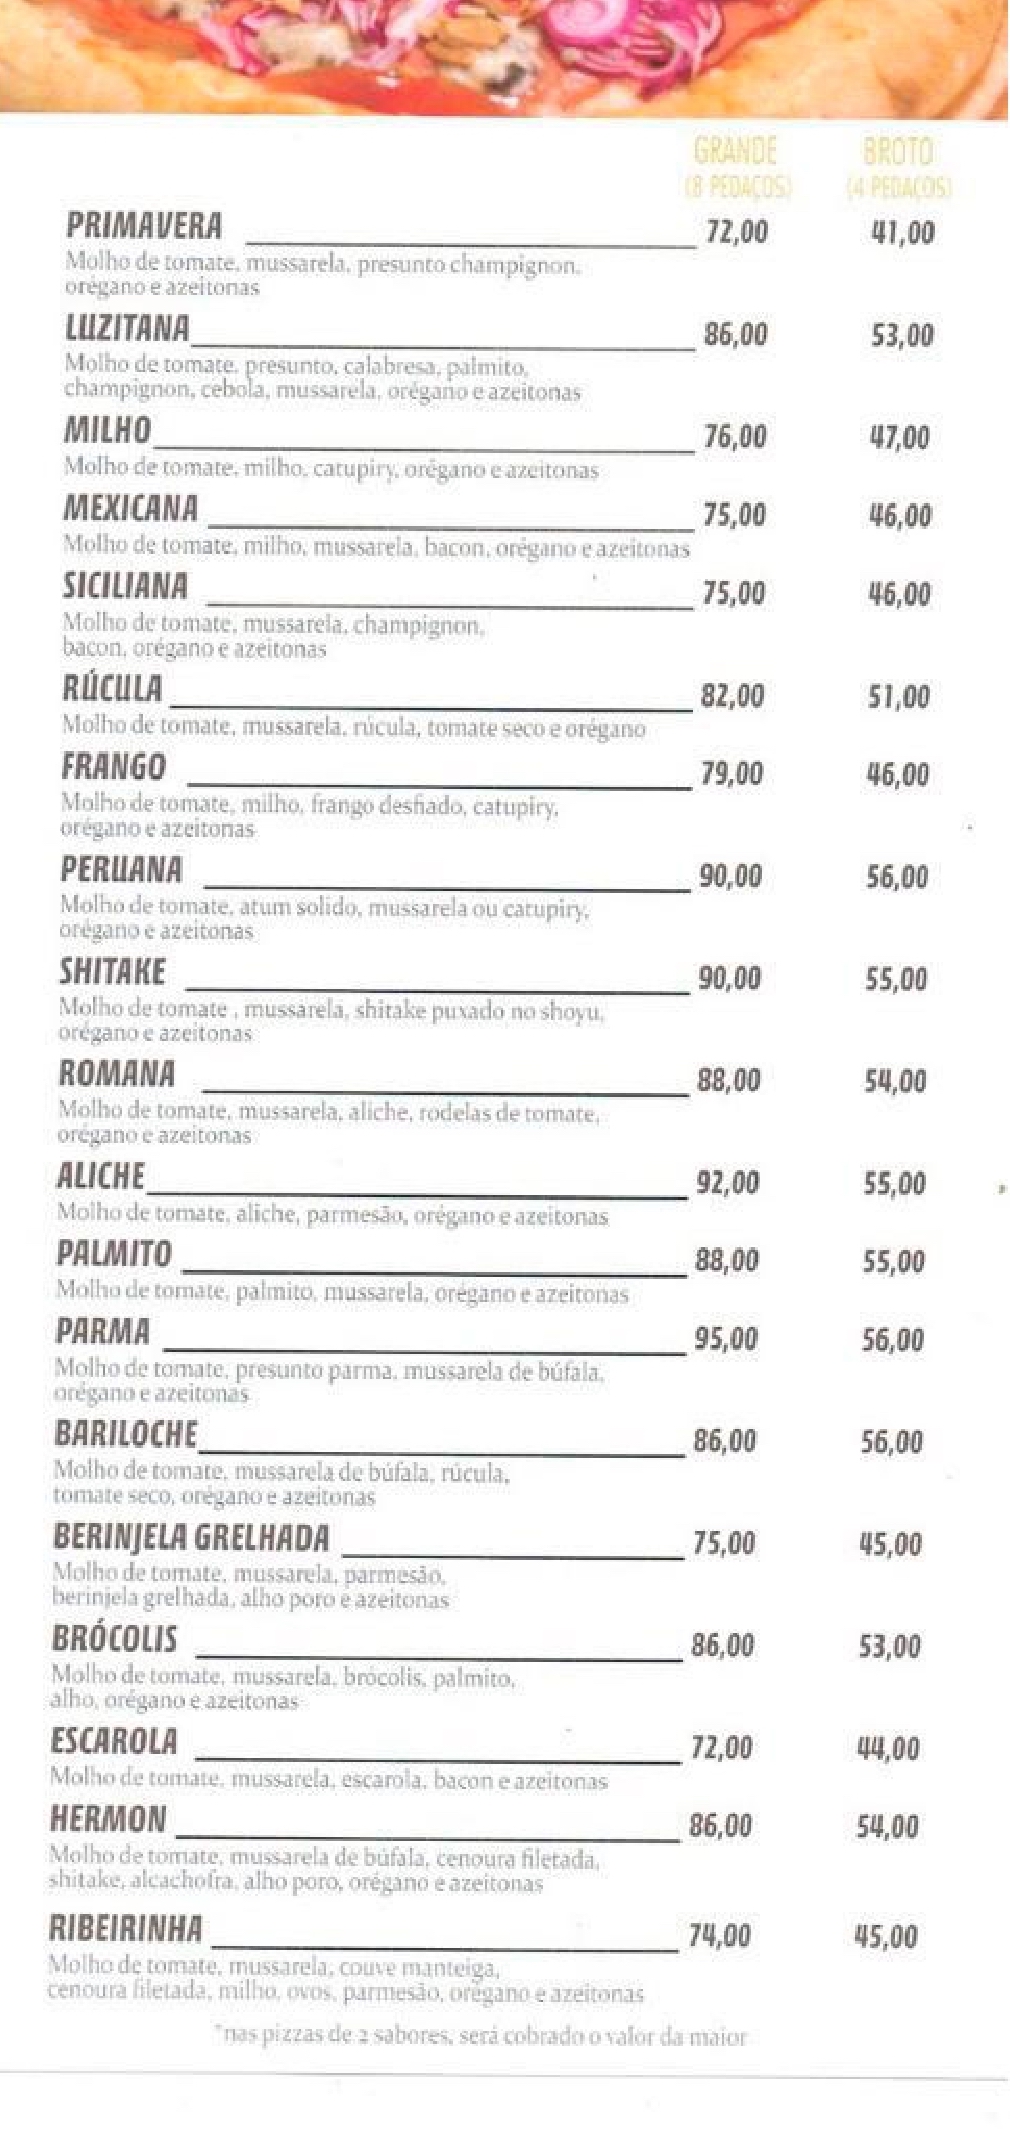 RESTAURANTE E PIZZARIA HERMON, Bertioga - Restaurant Reviews, Photos &  Phone Number - Tripadvisor